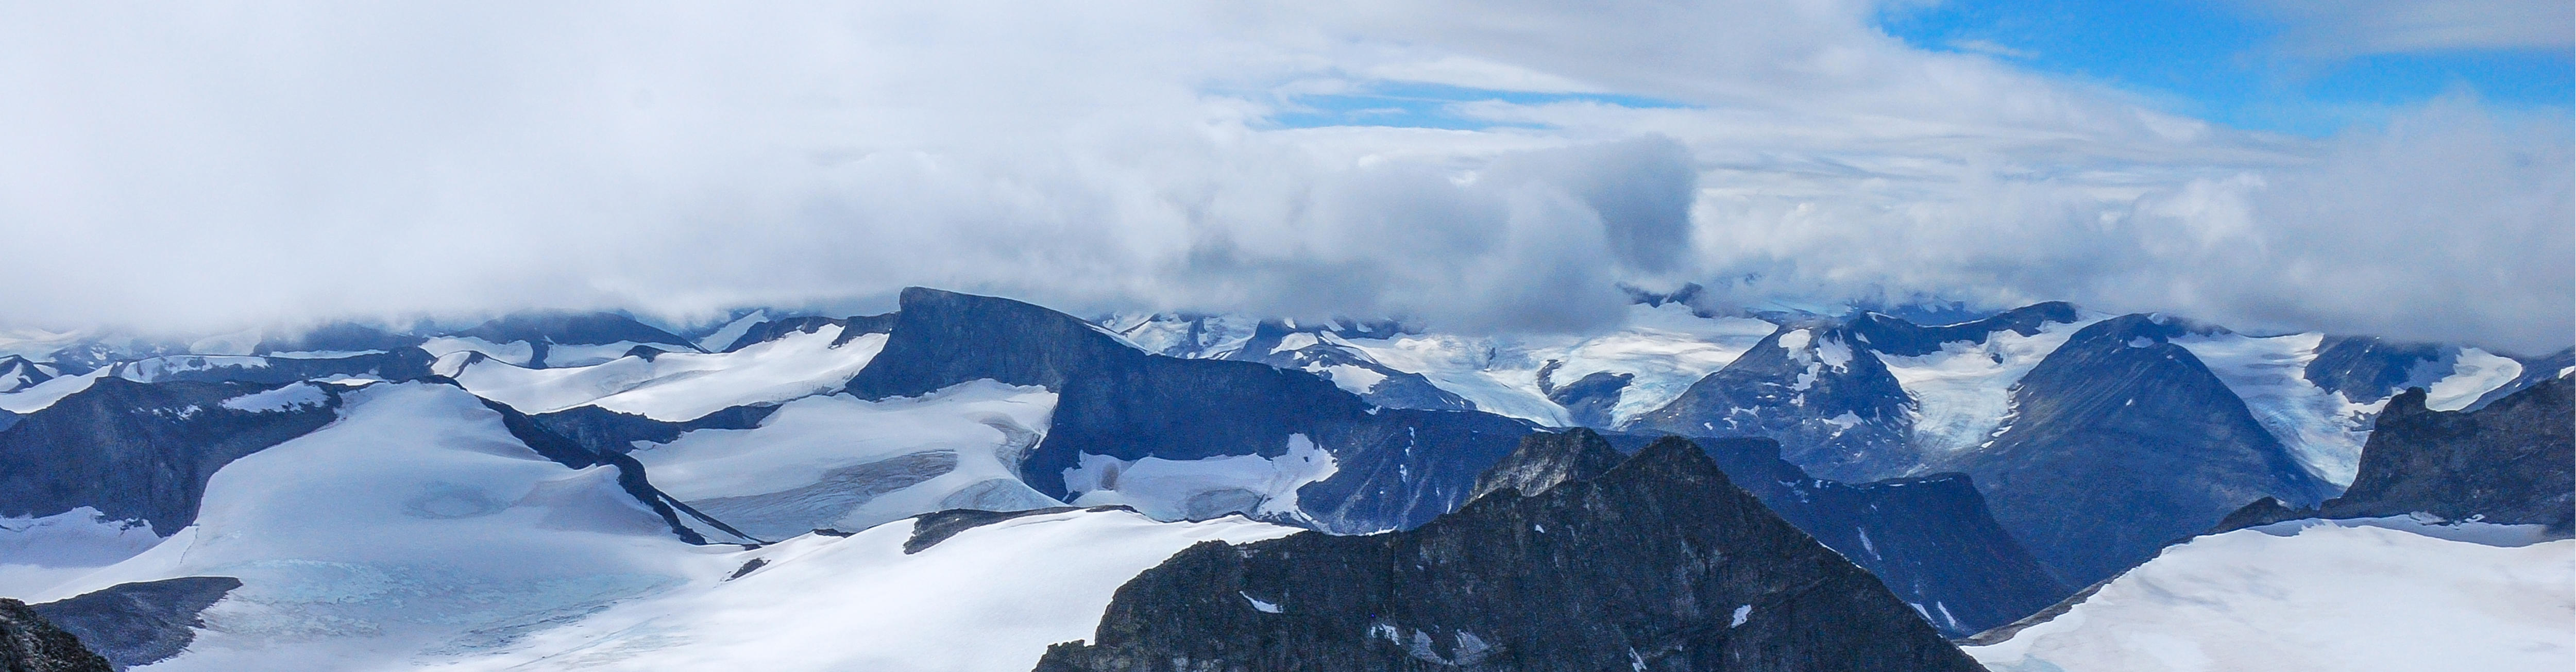 Fjellområde med isbre. Solfylt vær med noen skyer. Utsikt fra det høyeste fjellet i Norge, Galdhøpiggen